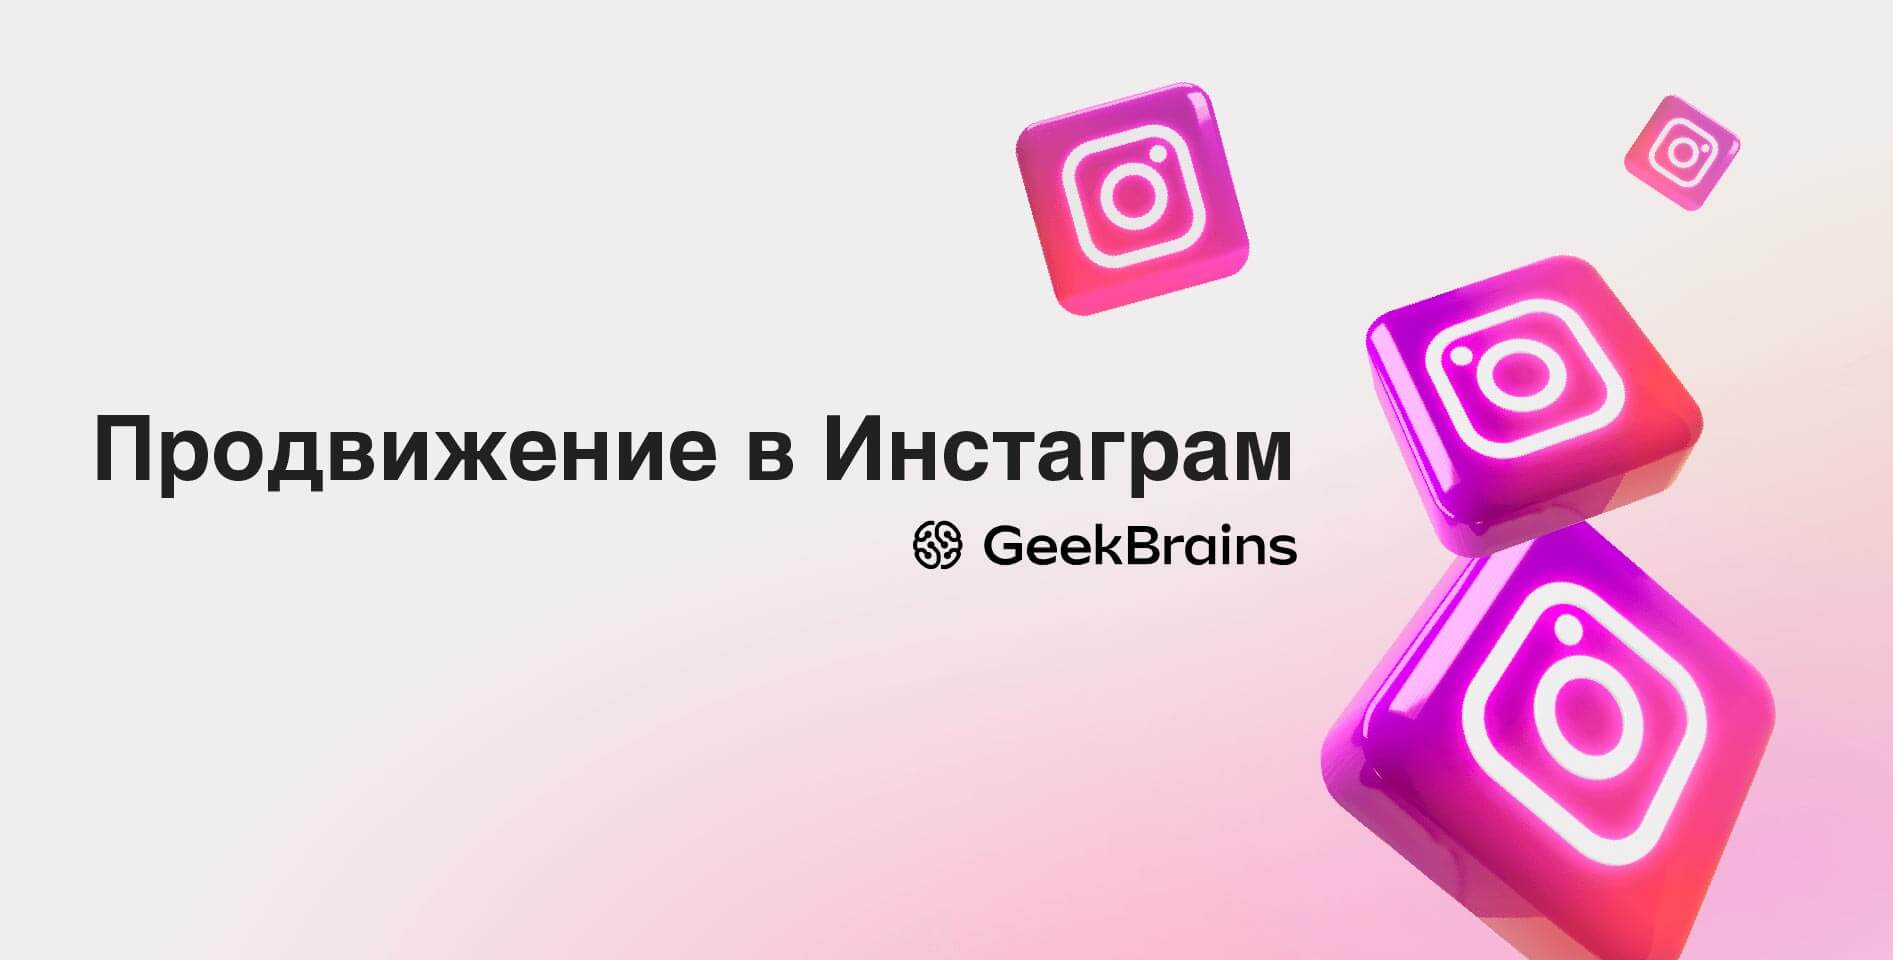 GeekBrains — «Продвижение в Инстаграм»